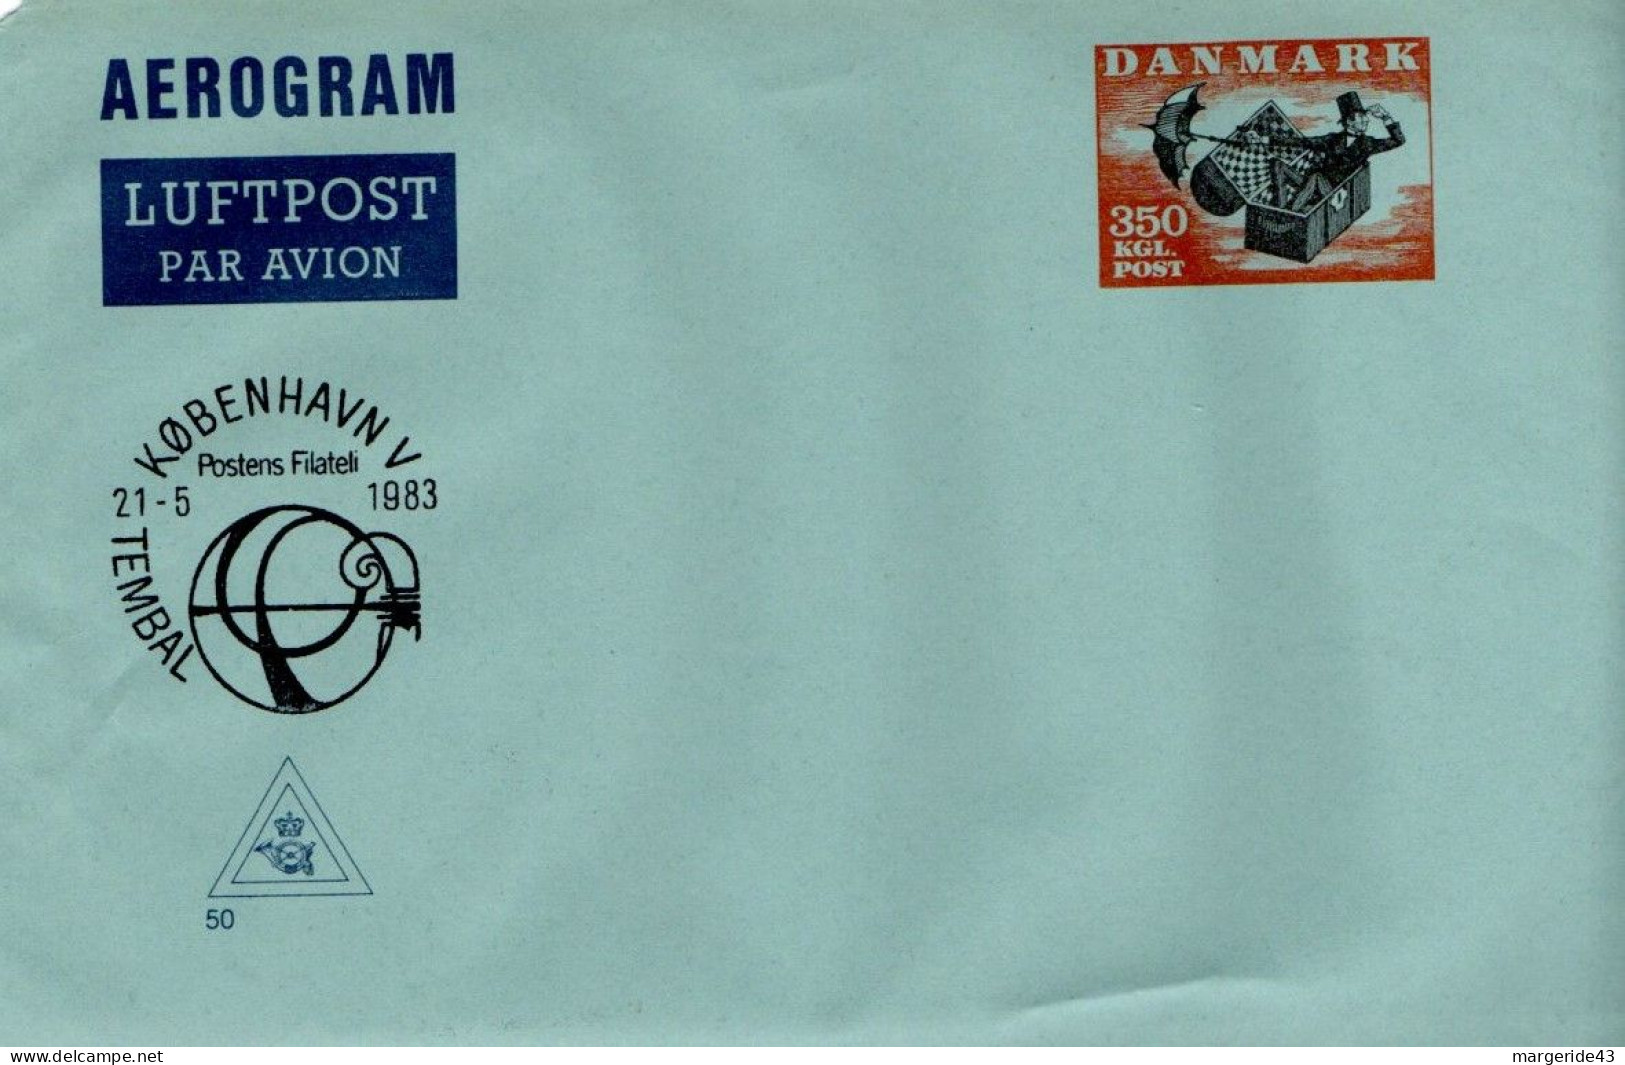 DANEMARK AEROGRAMME 350 LKGL NEUF - Postal Stationery